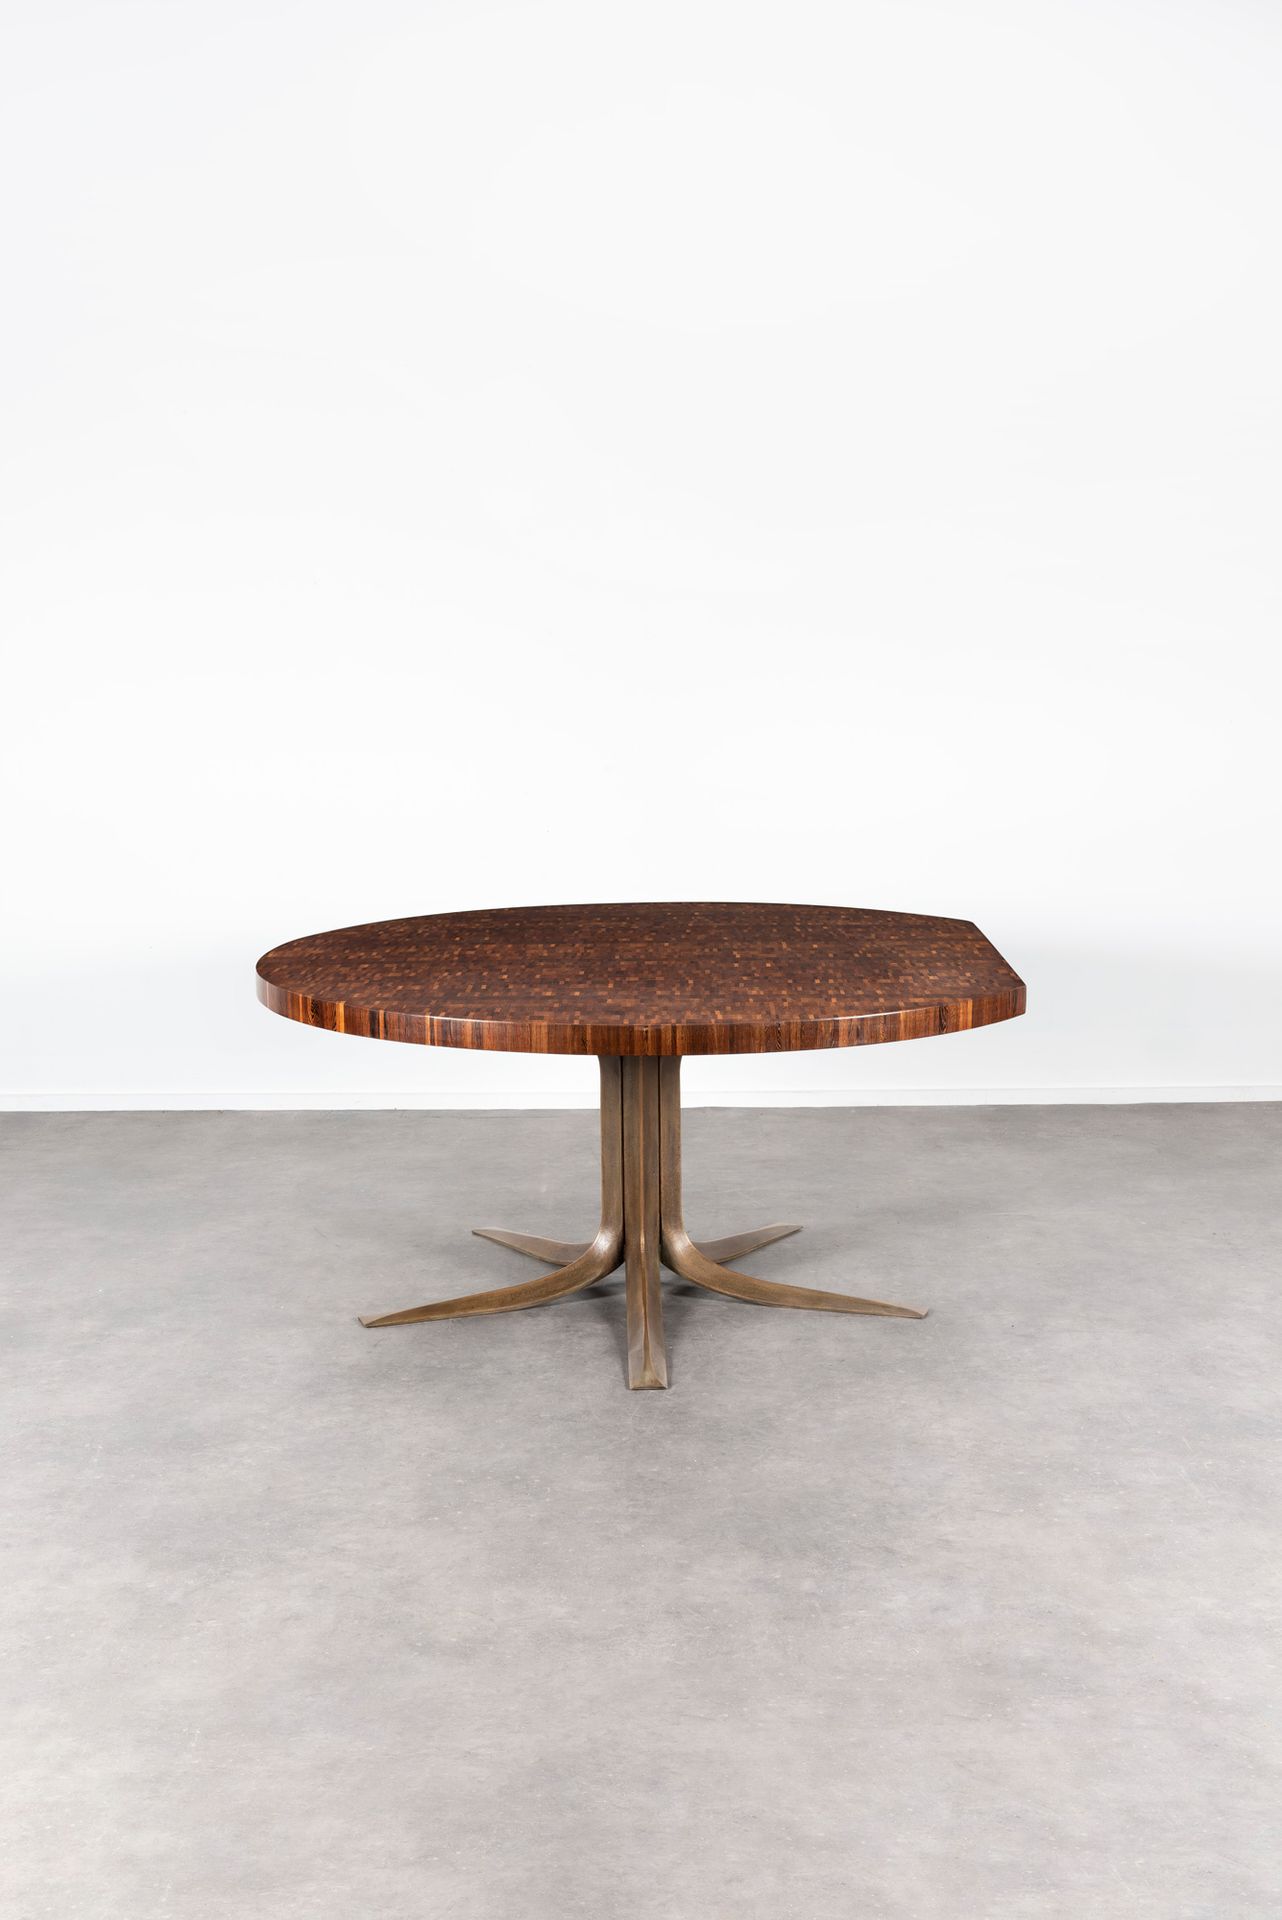 JULES WABBES (1919-1974) AR 
Tisch mit abgeschnittener Kante
Stehende Holzplatte&hellip;